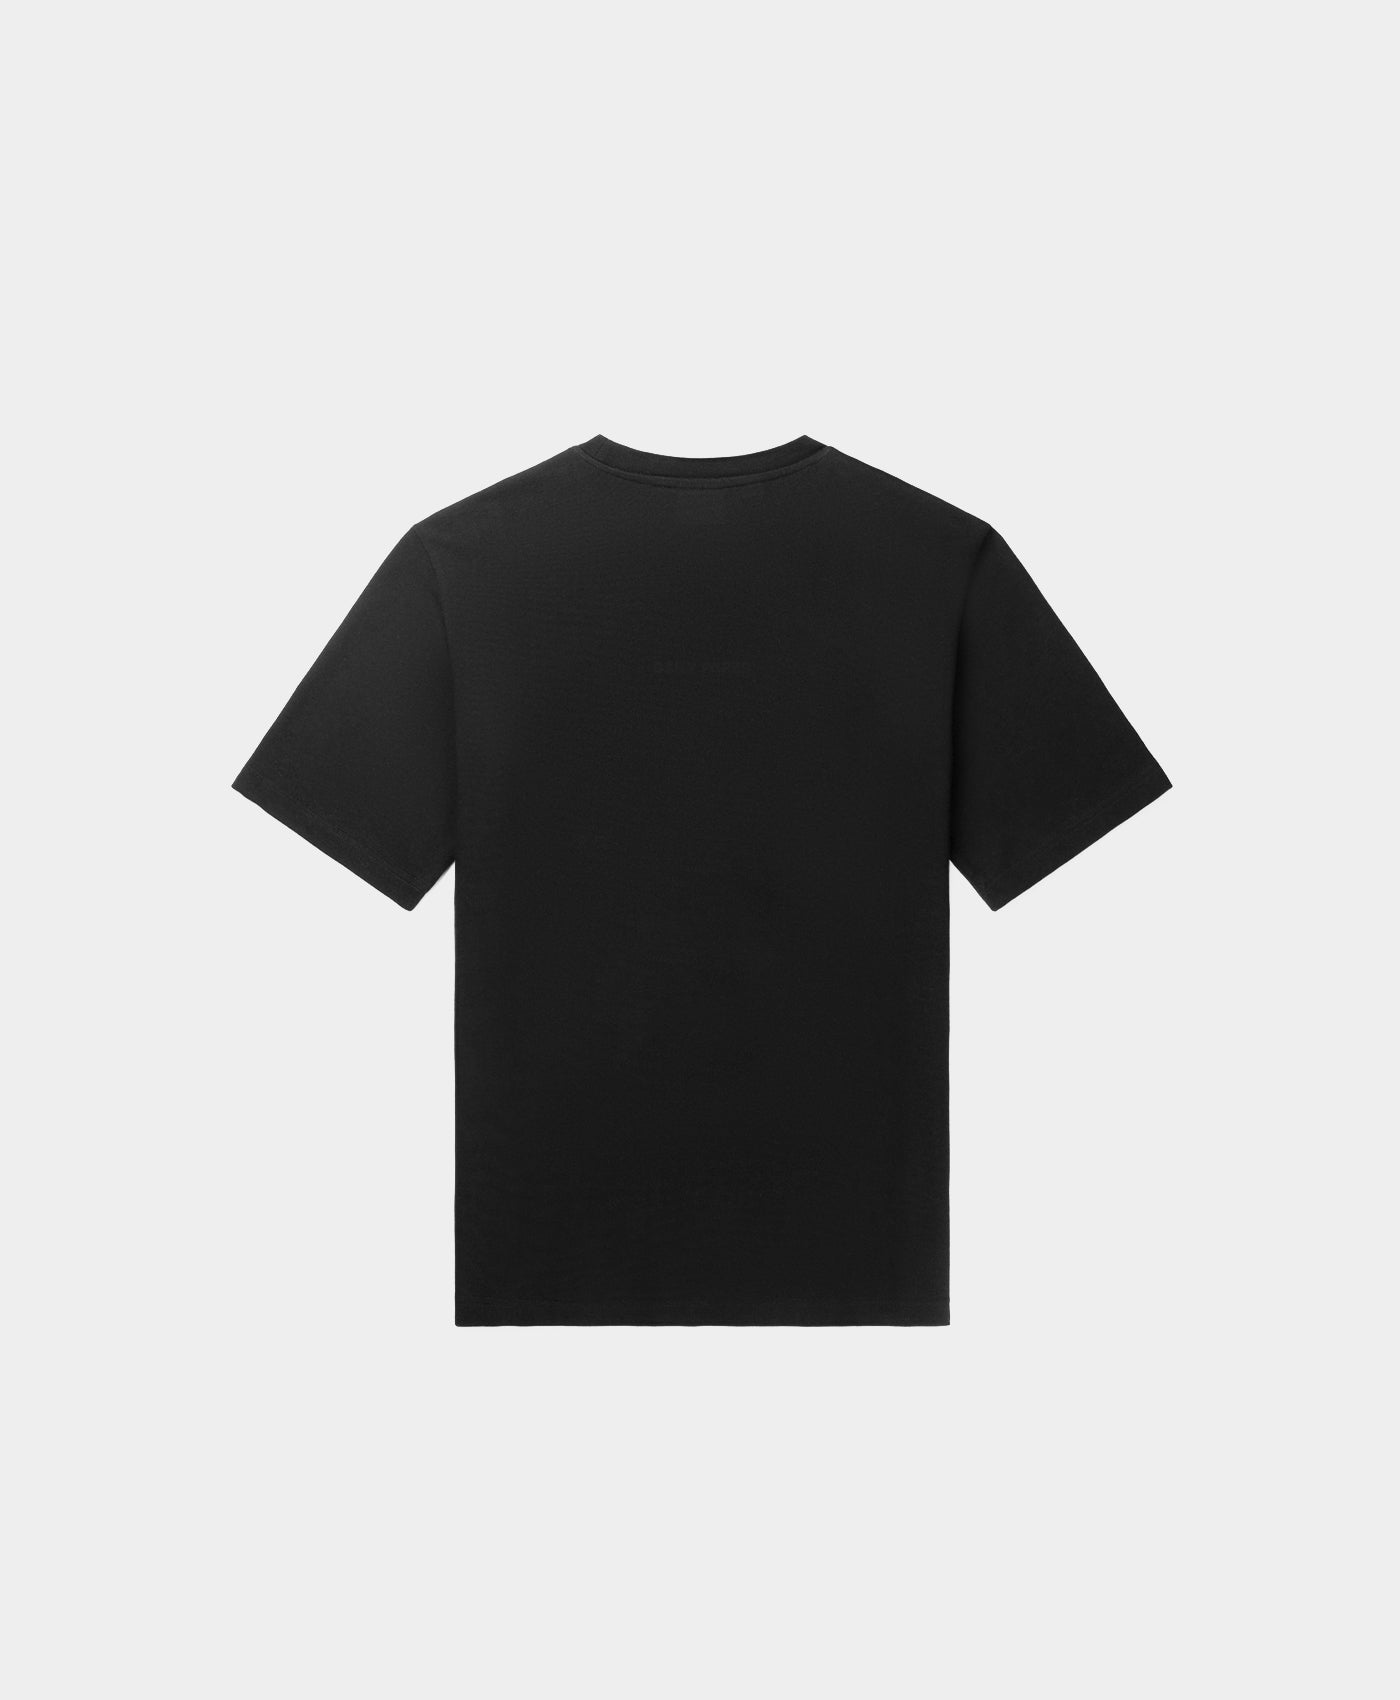 DP - Black Refarid T-Shirt - Packshot - Rear